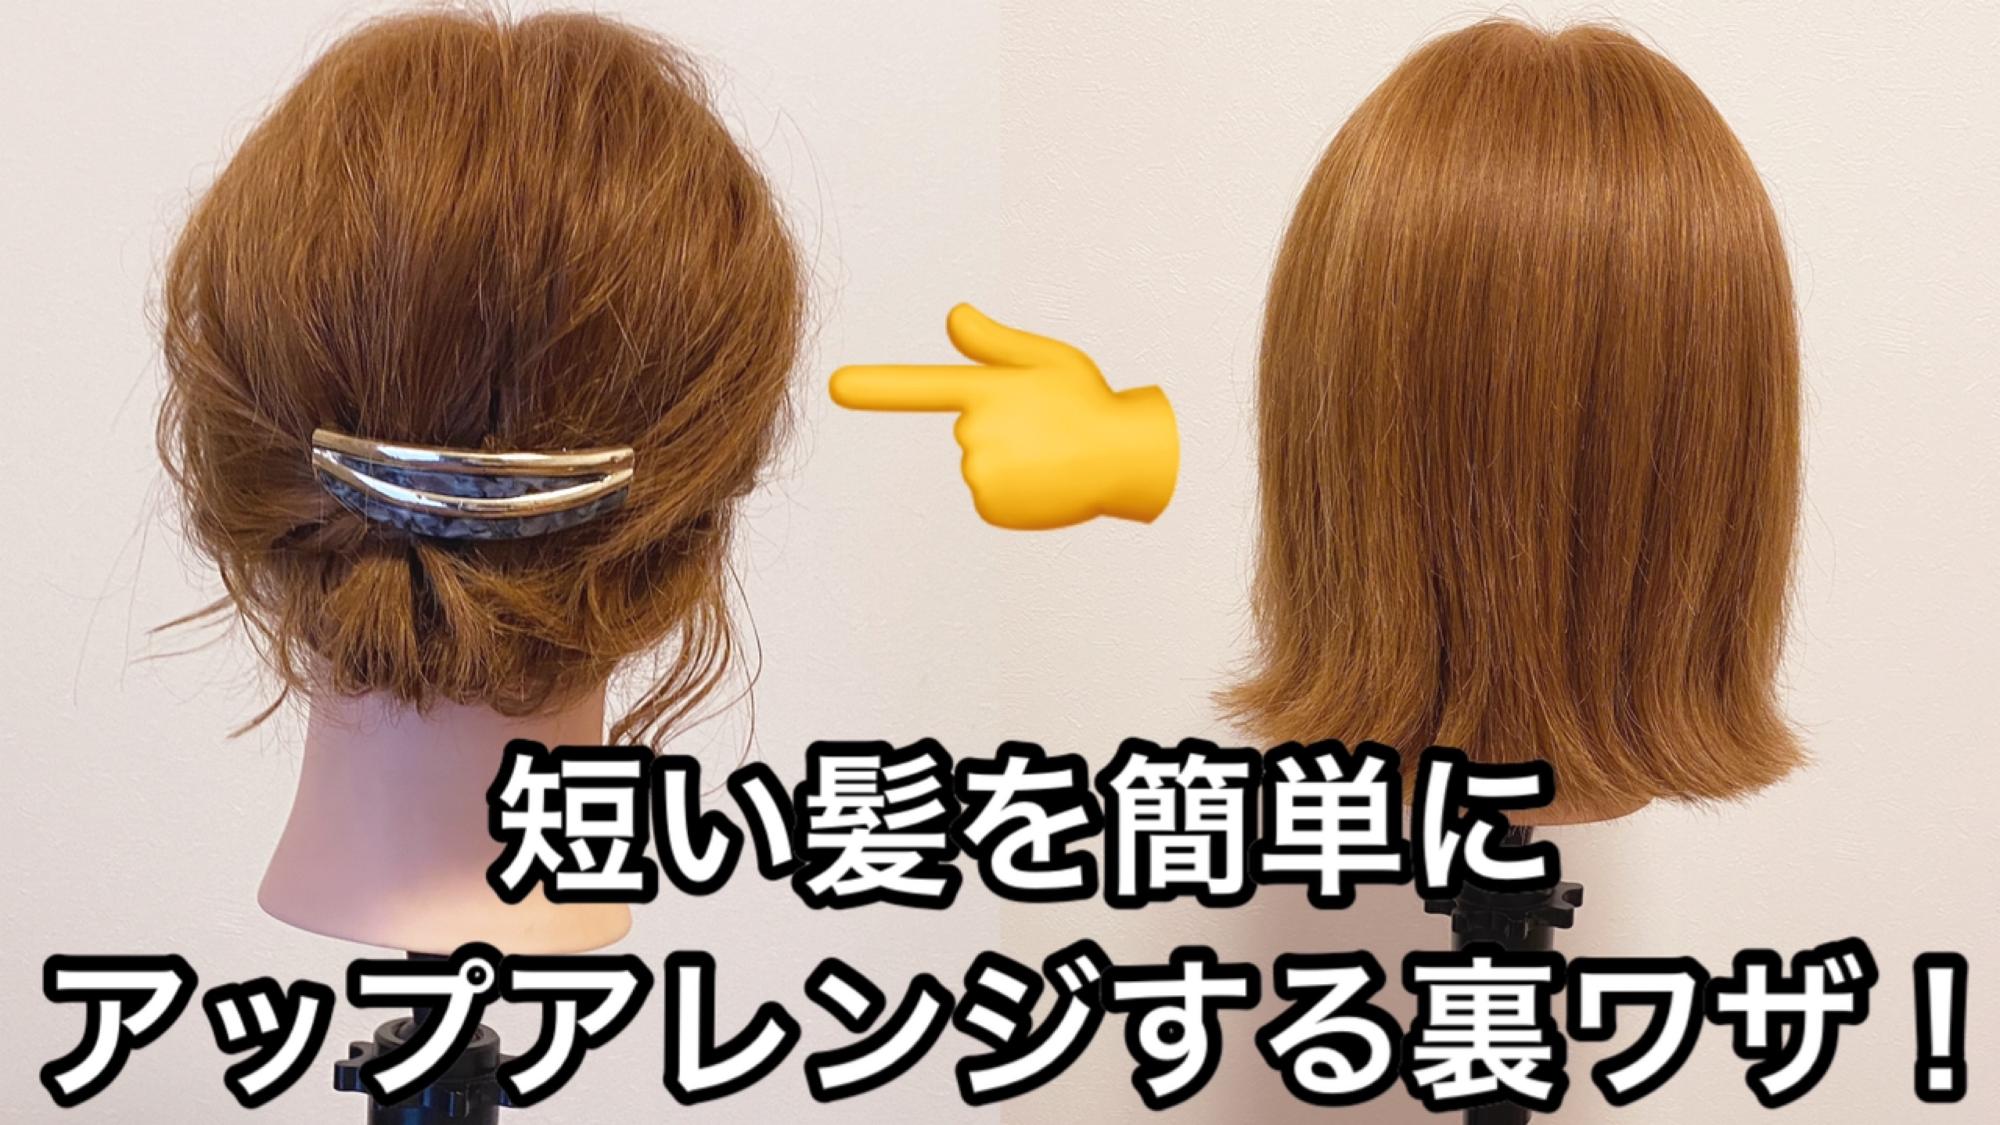 ショート ボブ向け 短い髪を簡単にアップアレンジする裏ワザ公開 Mizunotoshirouヘアアレンジ Yahoo Japan クリエイターズプログラム